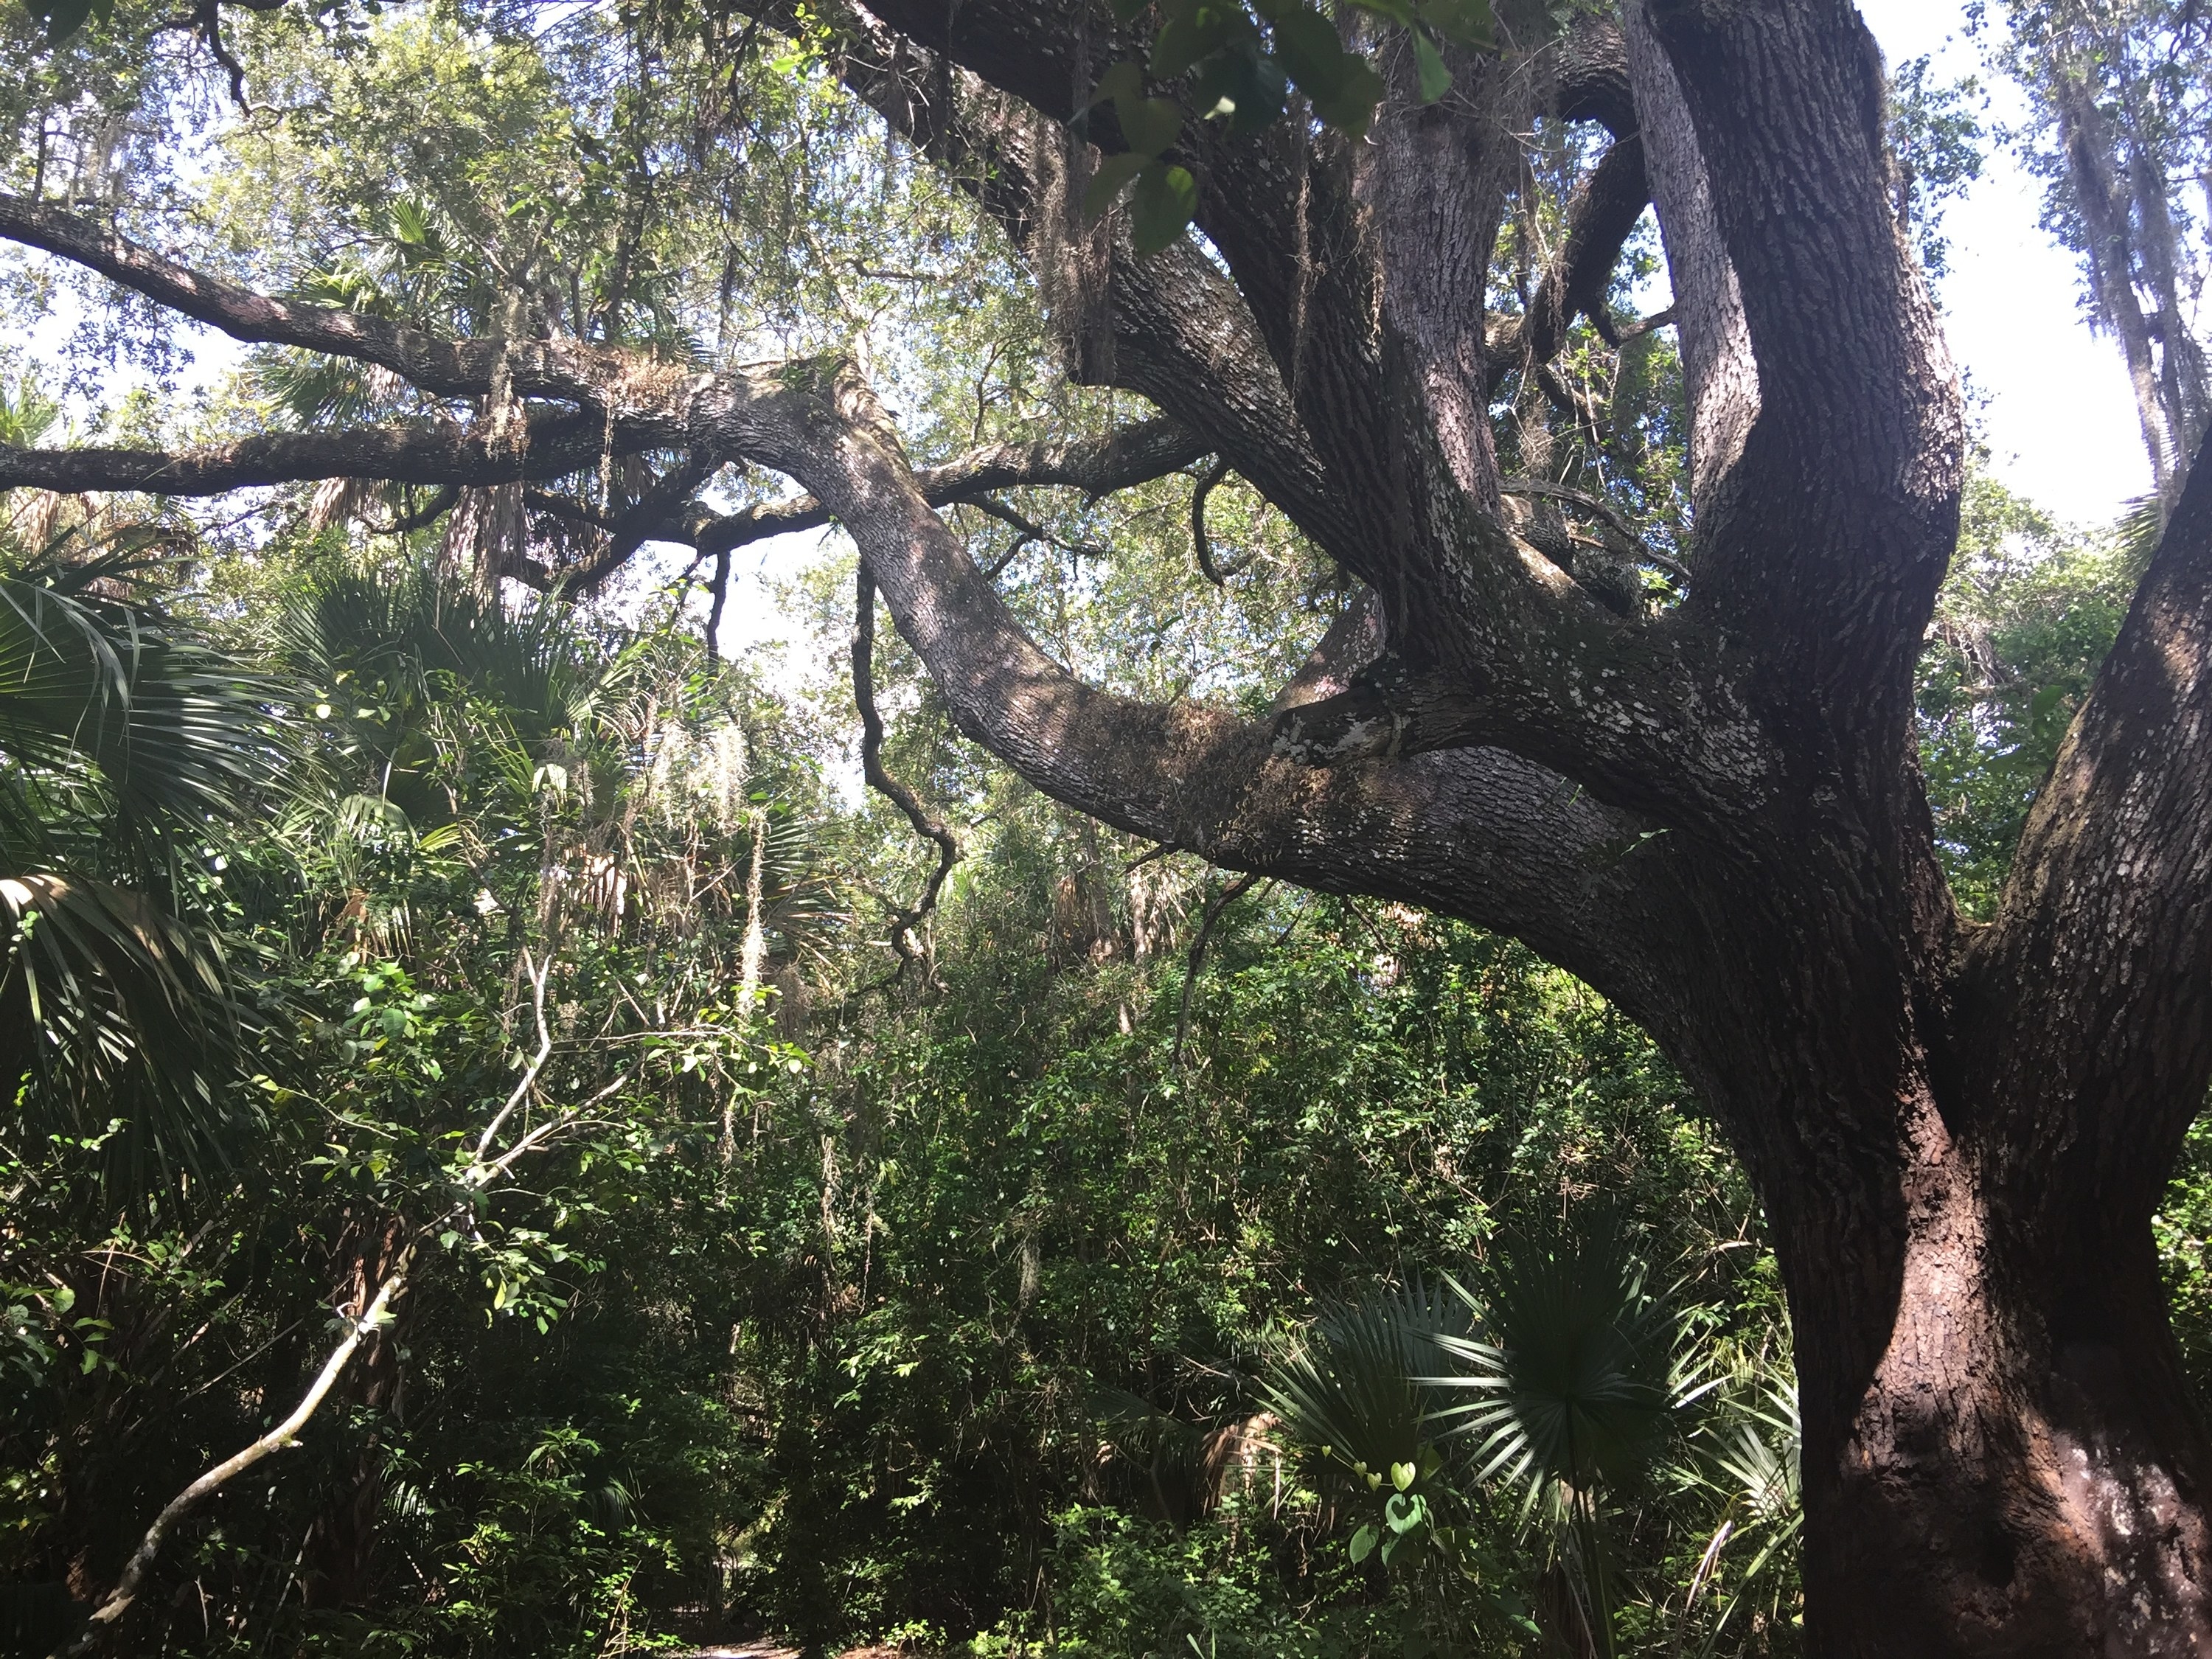 Gigantic oak tree by a trail